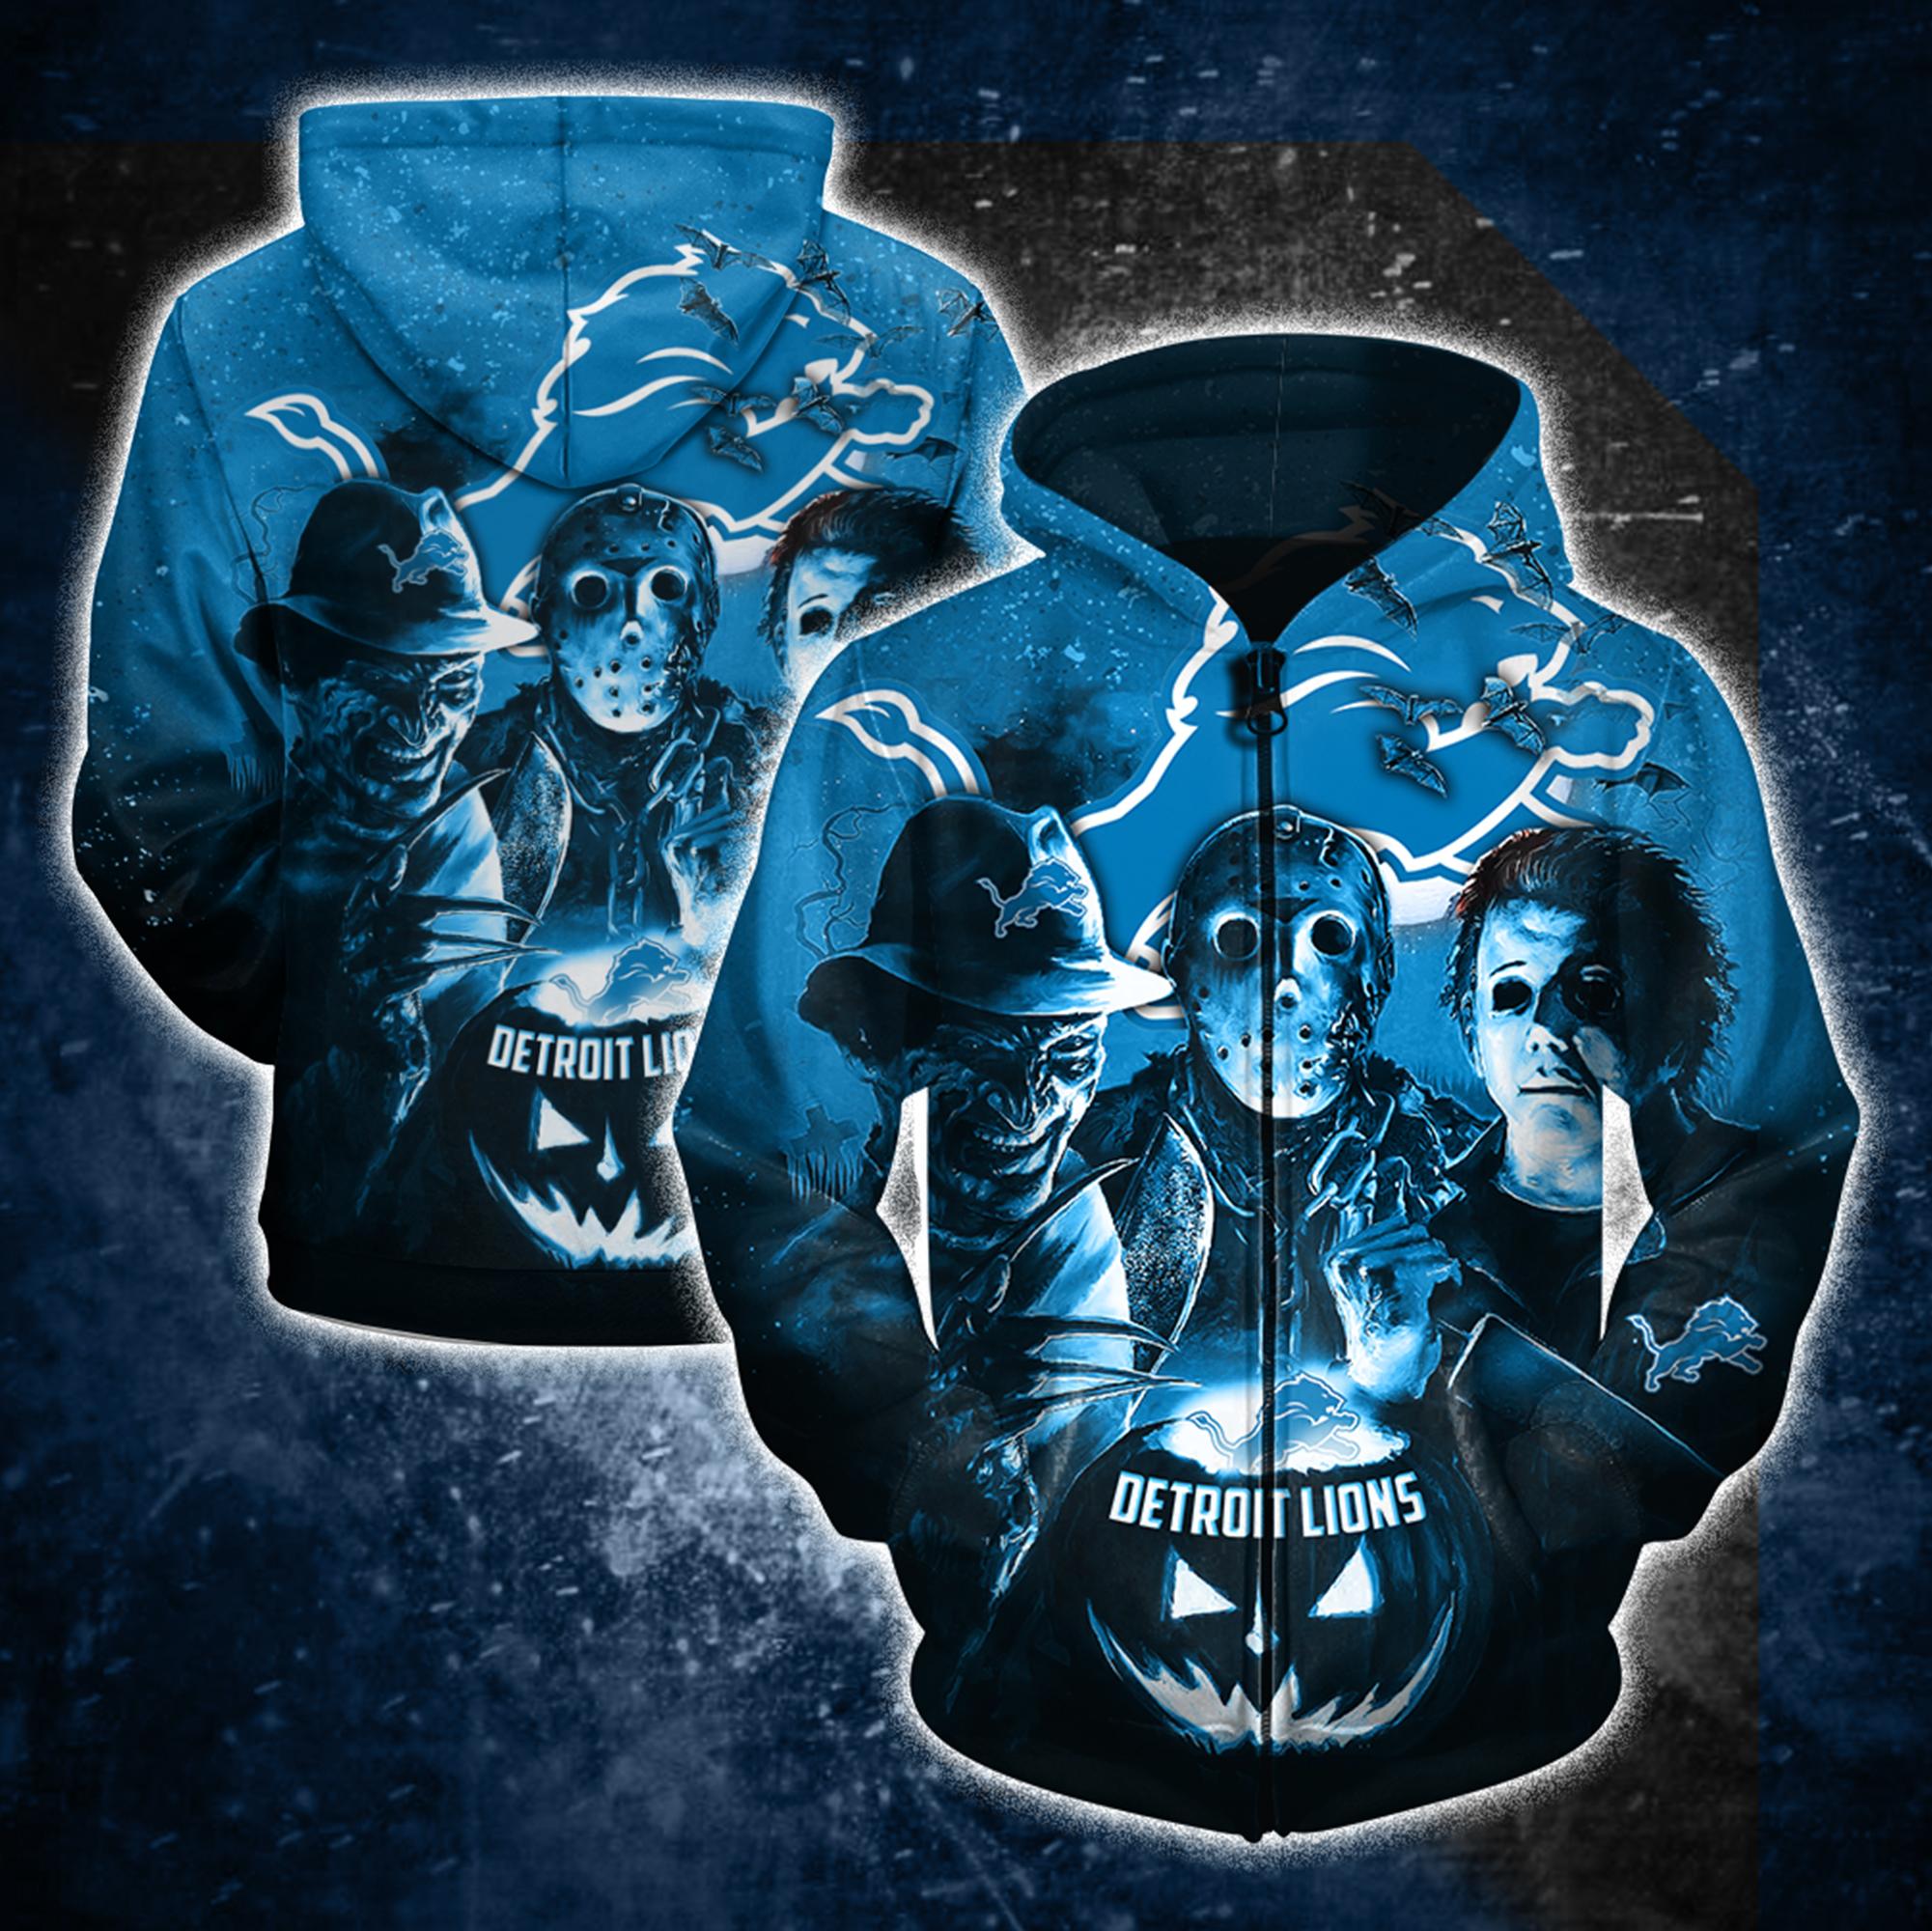 Detroit lions horror movie characters 3d zipper hoodie - size m